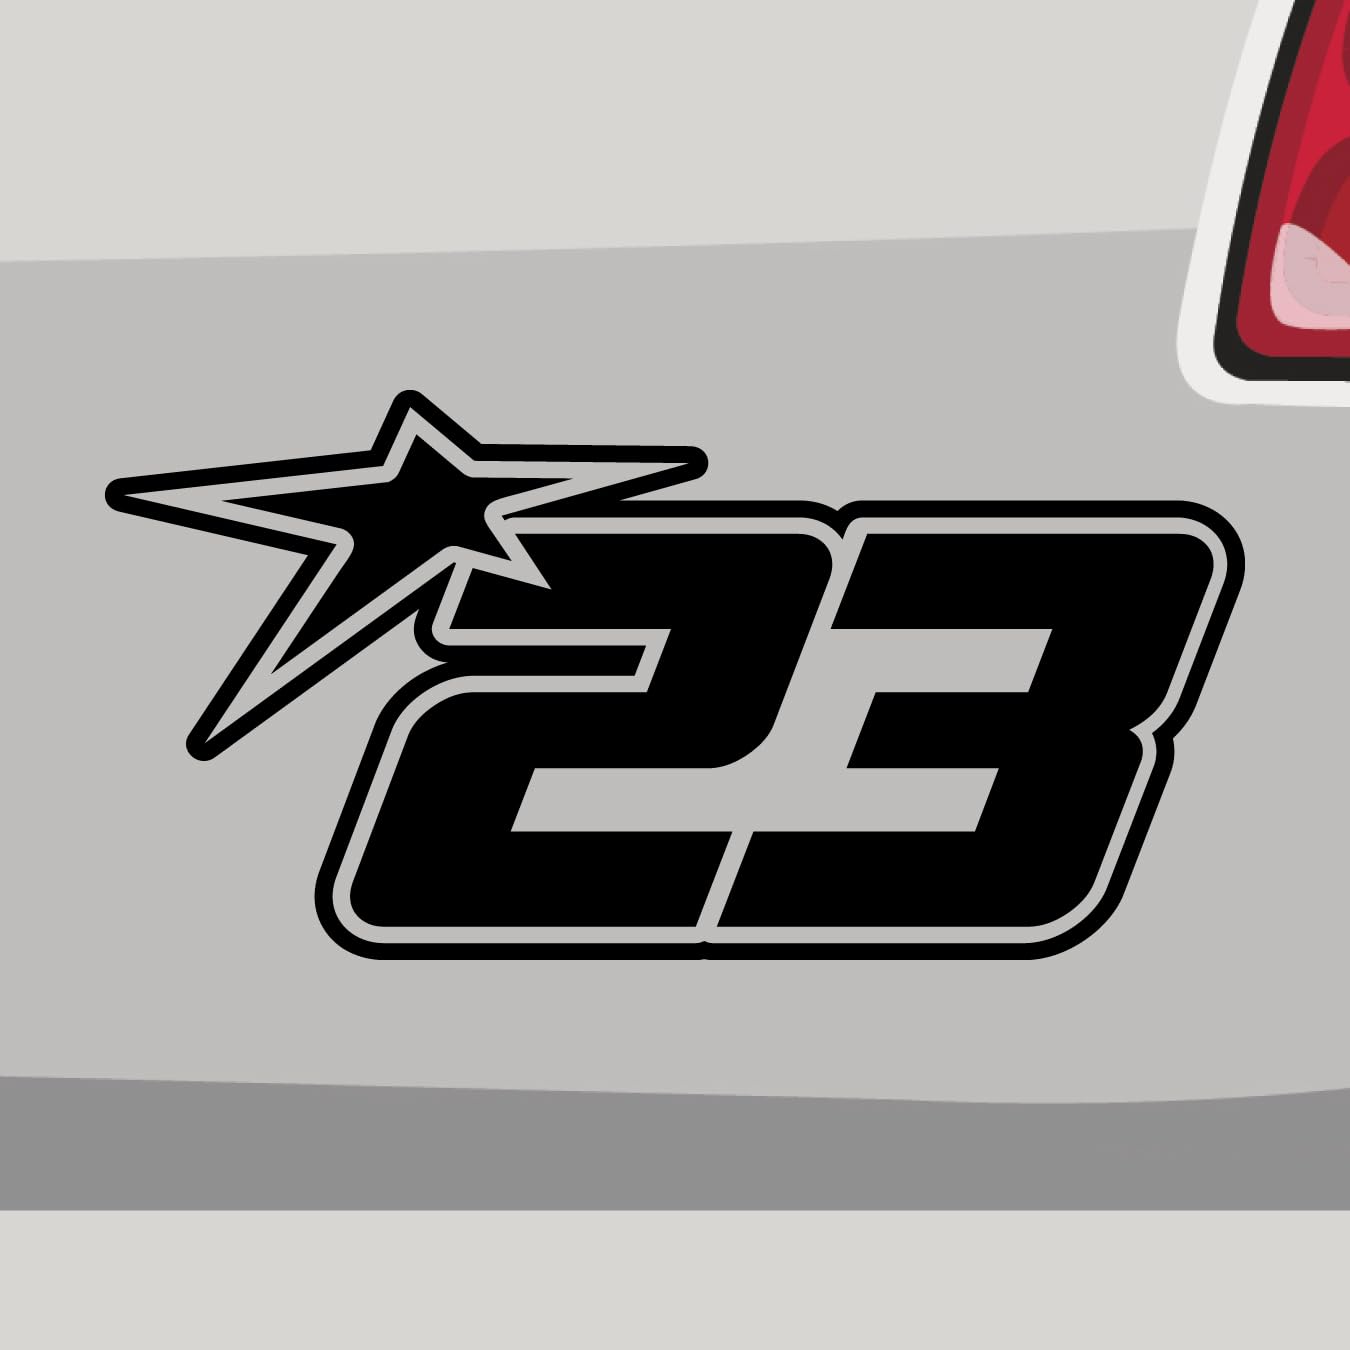 Stickerfreaks Startnummer 23 Aufkleber Race Track Sticker Star Stern Auto Bike Decal Vinyl JDM Aufkleber Größe: 20x10cm (L) | Farbe: 31-neonrot | Racenumber Sticker Kleber Deko Tuning Zahl von Stickerfreaks